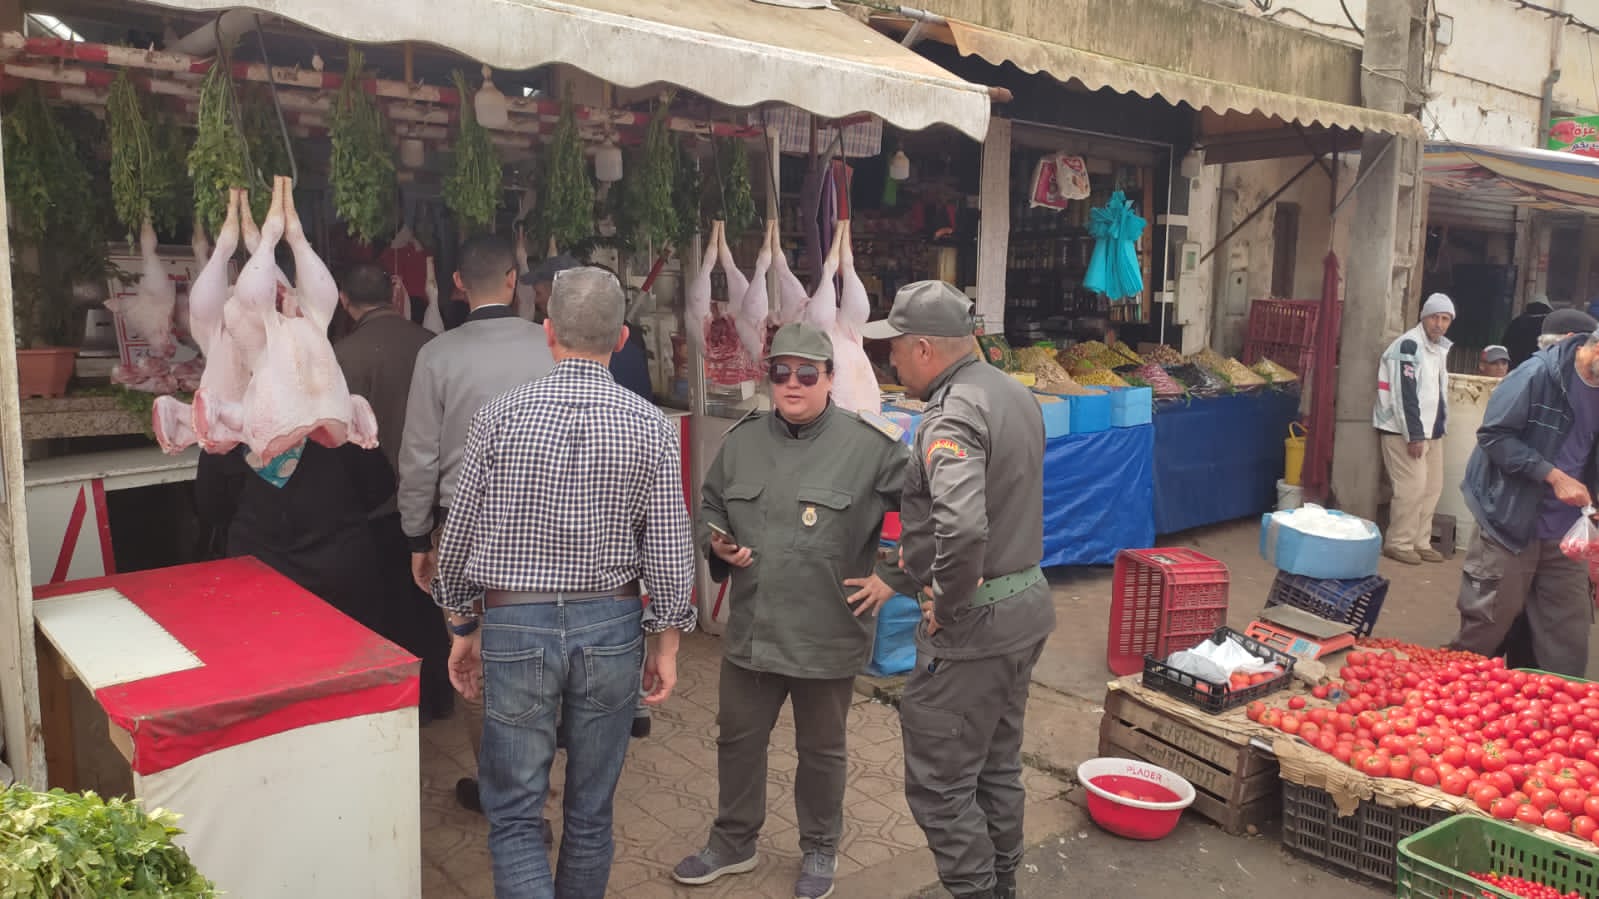 لجنة مختلطة تزور سوق لالة زهرة بالجديدة لمراقبة الأسعار وجودة المنتجات الغذائية 